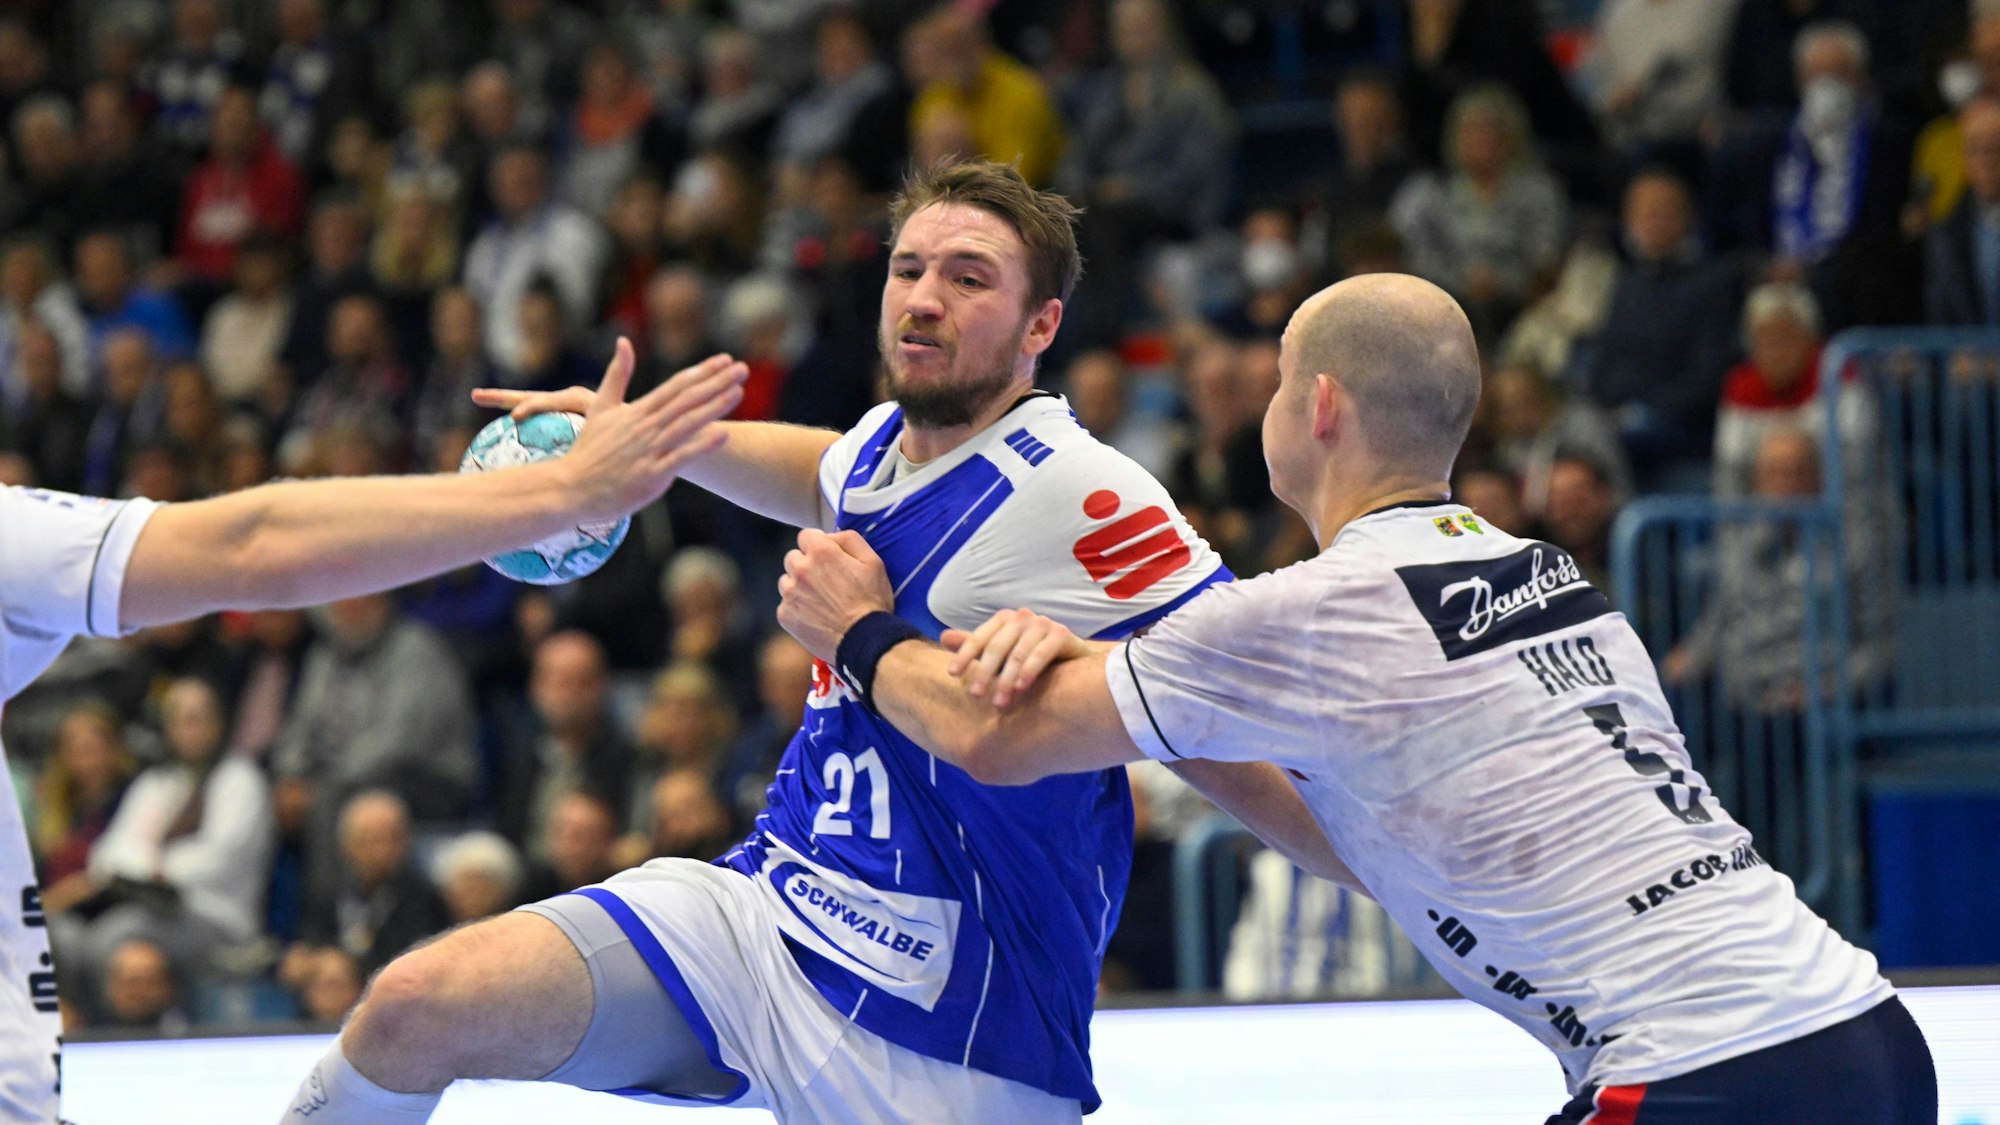 VfL-Handballer Dominik Mappes im Sprungwurf. Flensburger Spieler versuchen, ihn zu decken.